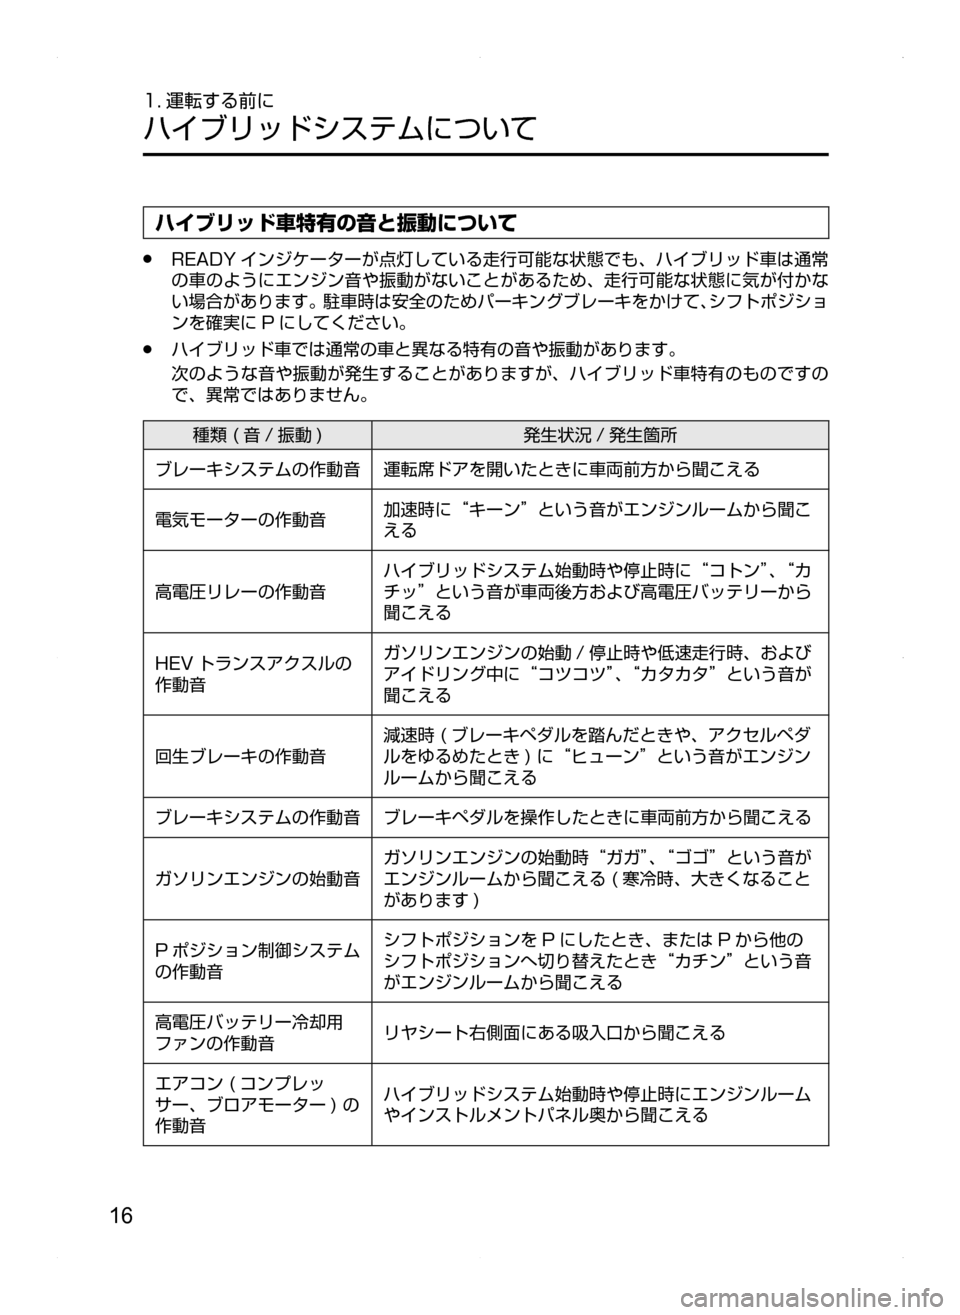 MAZDA MODEL AXELA HYBRID 2014  アクセラハイブリッド｜取扱説明書 (in Japanese) 16
1. 運転する前に
ハイブリッドシステムについて
ハイブリッド車特有の音と振動について
.●READY インジケーターが点灯している走行可能な状態で�